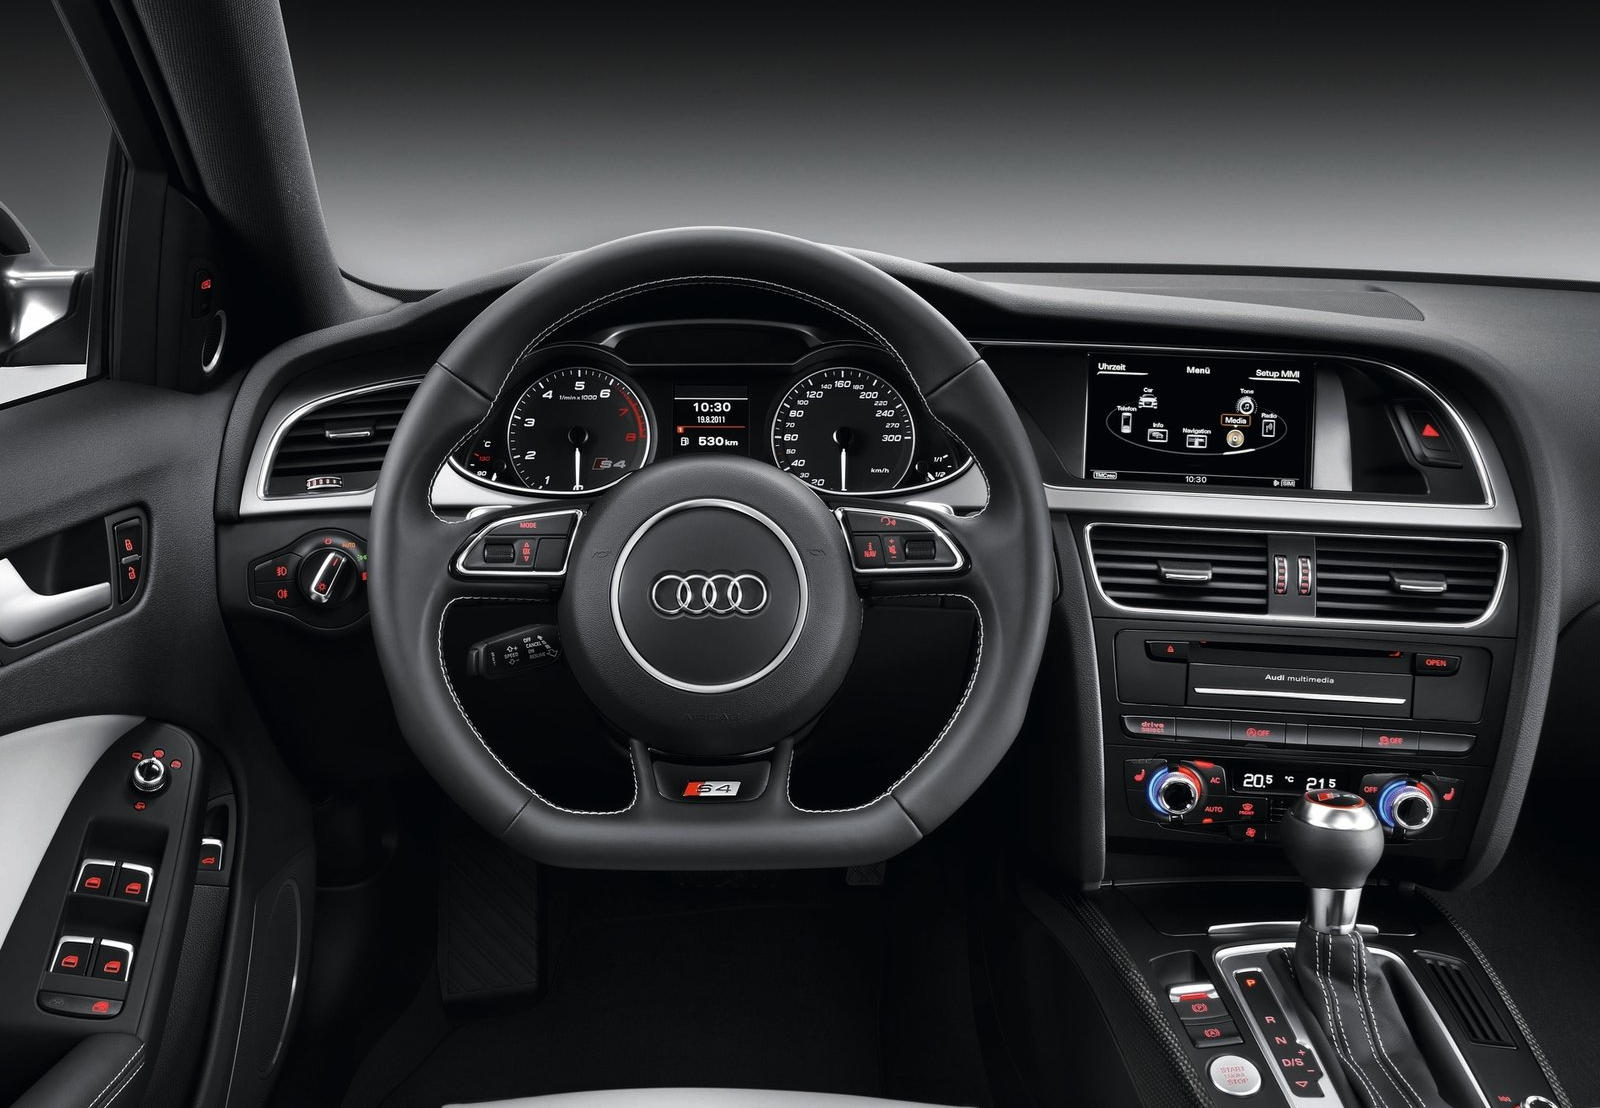 2013 Audi S4 Sedan Steering Wheel